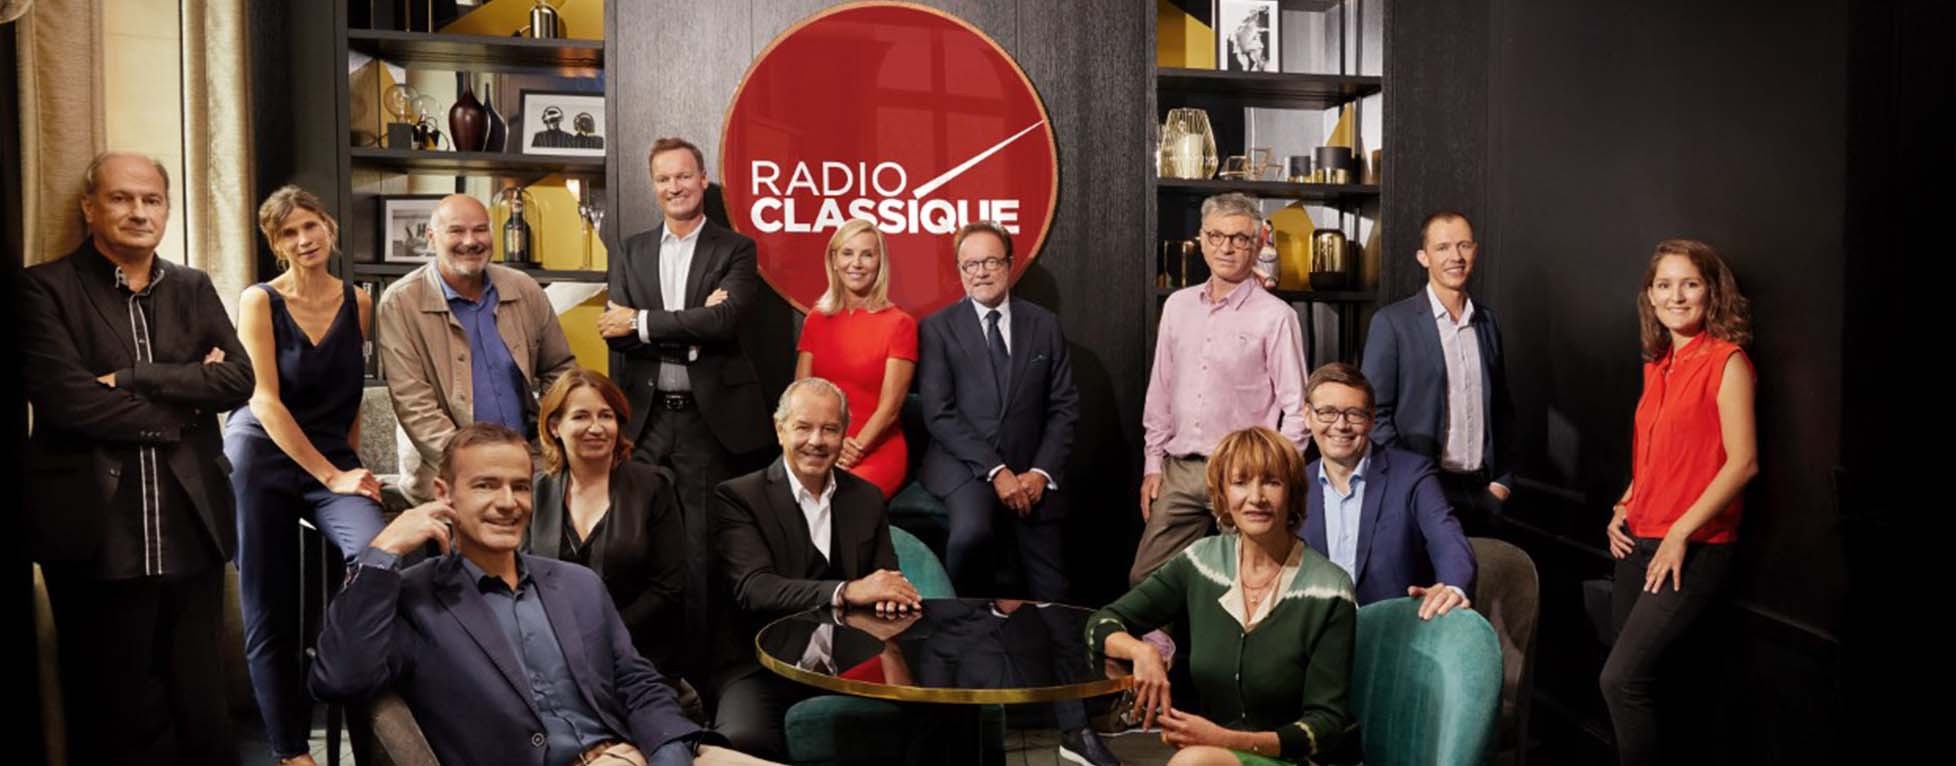 Radio Classique obtient une diffusion nationale en DAB+